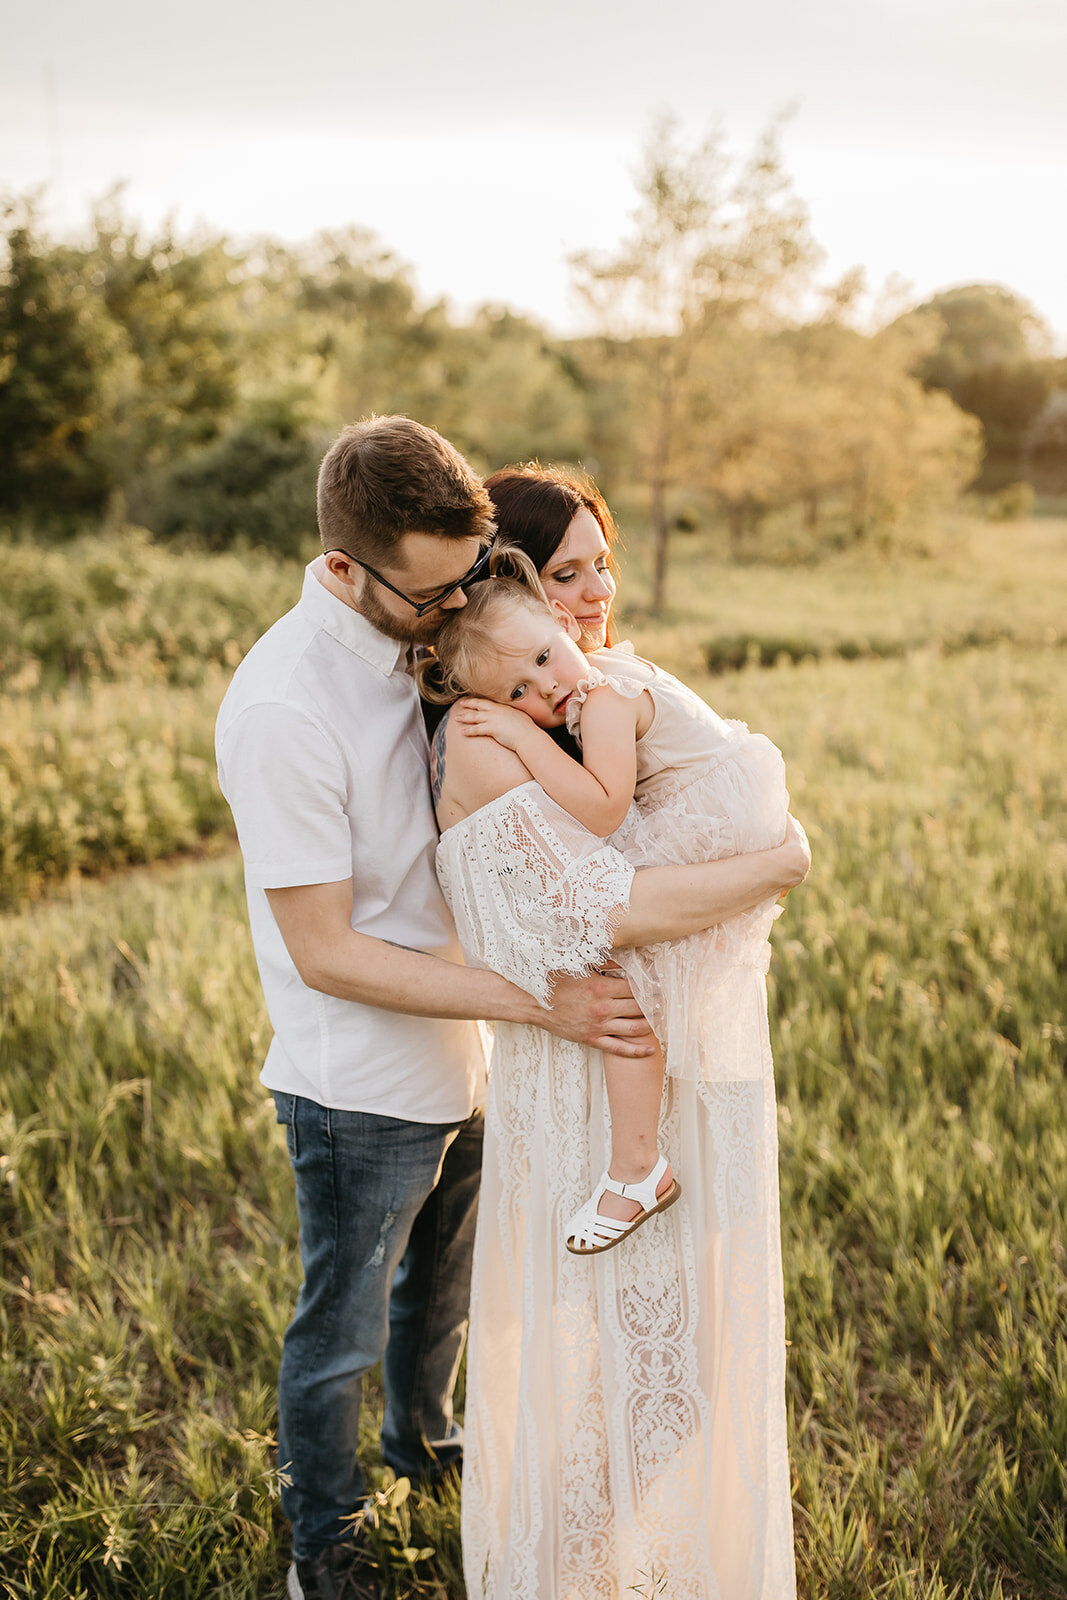 Jessica Magee - Family-Maternity Photographer Wichita Kansas Andrea Corwin Photography (92 of 101)_websize-2